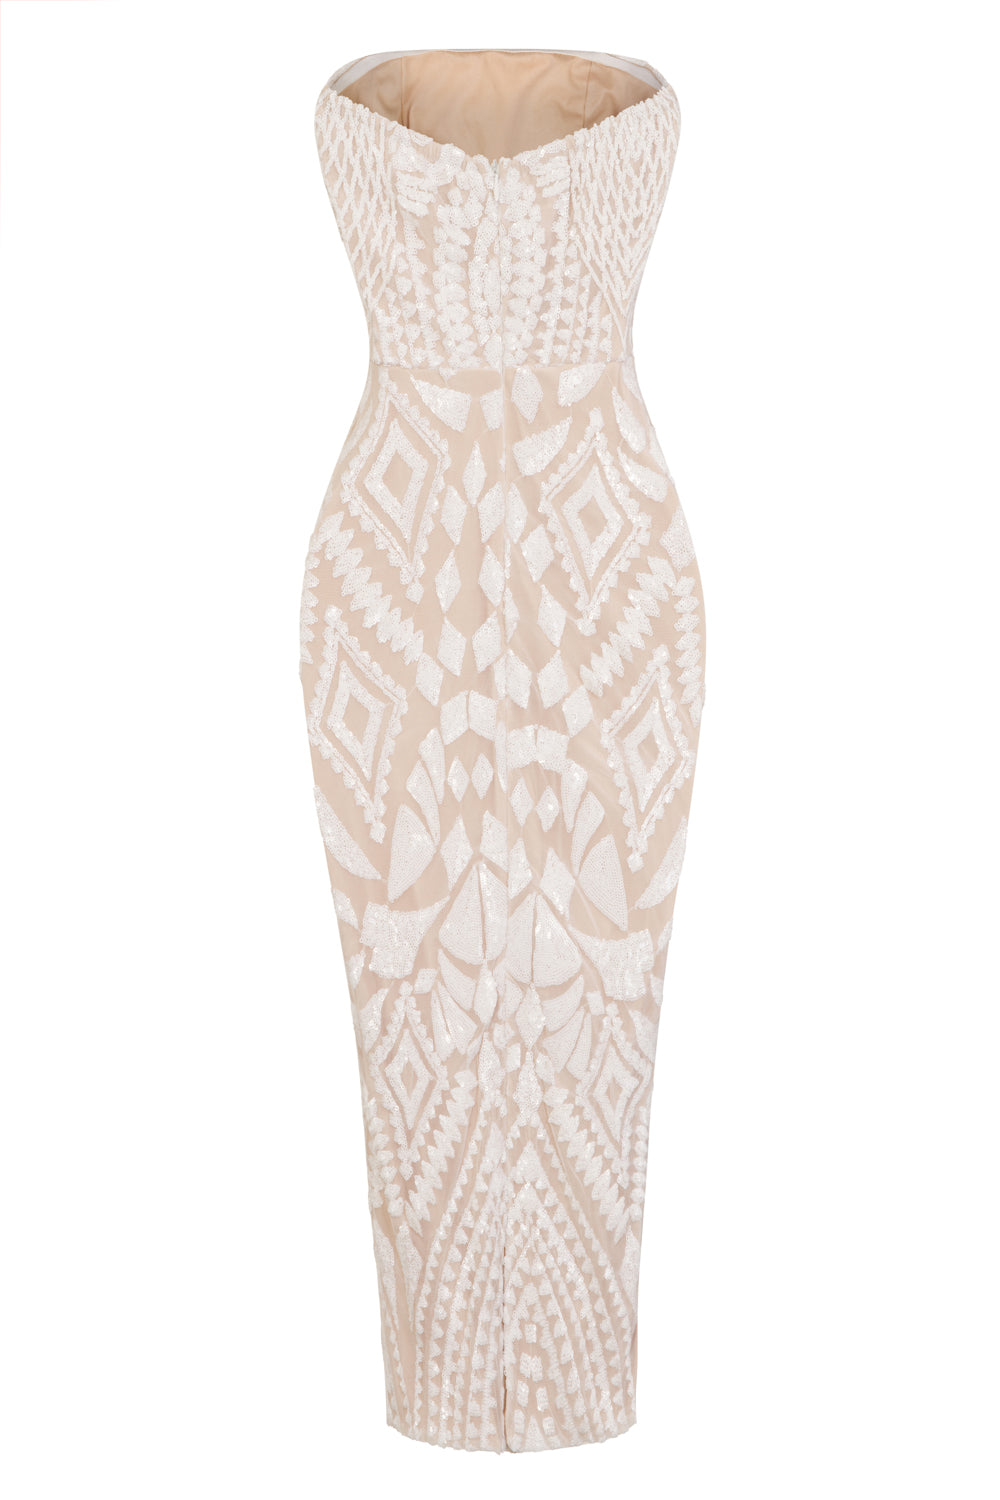 Chic Luxe White Nude Strapless Sequin Illusion Midi Pencil Dress